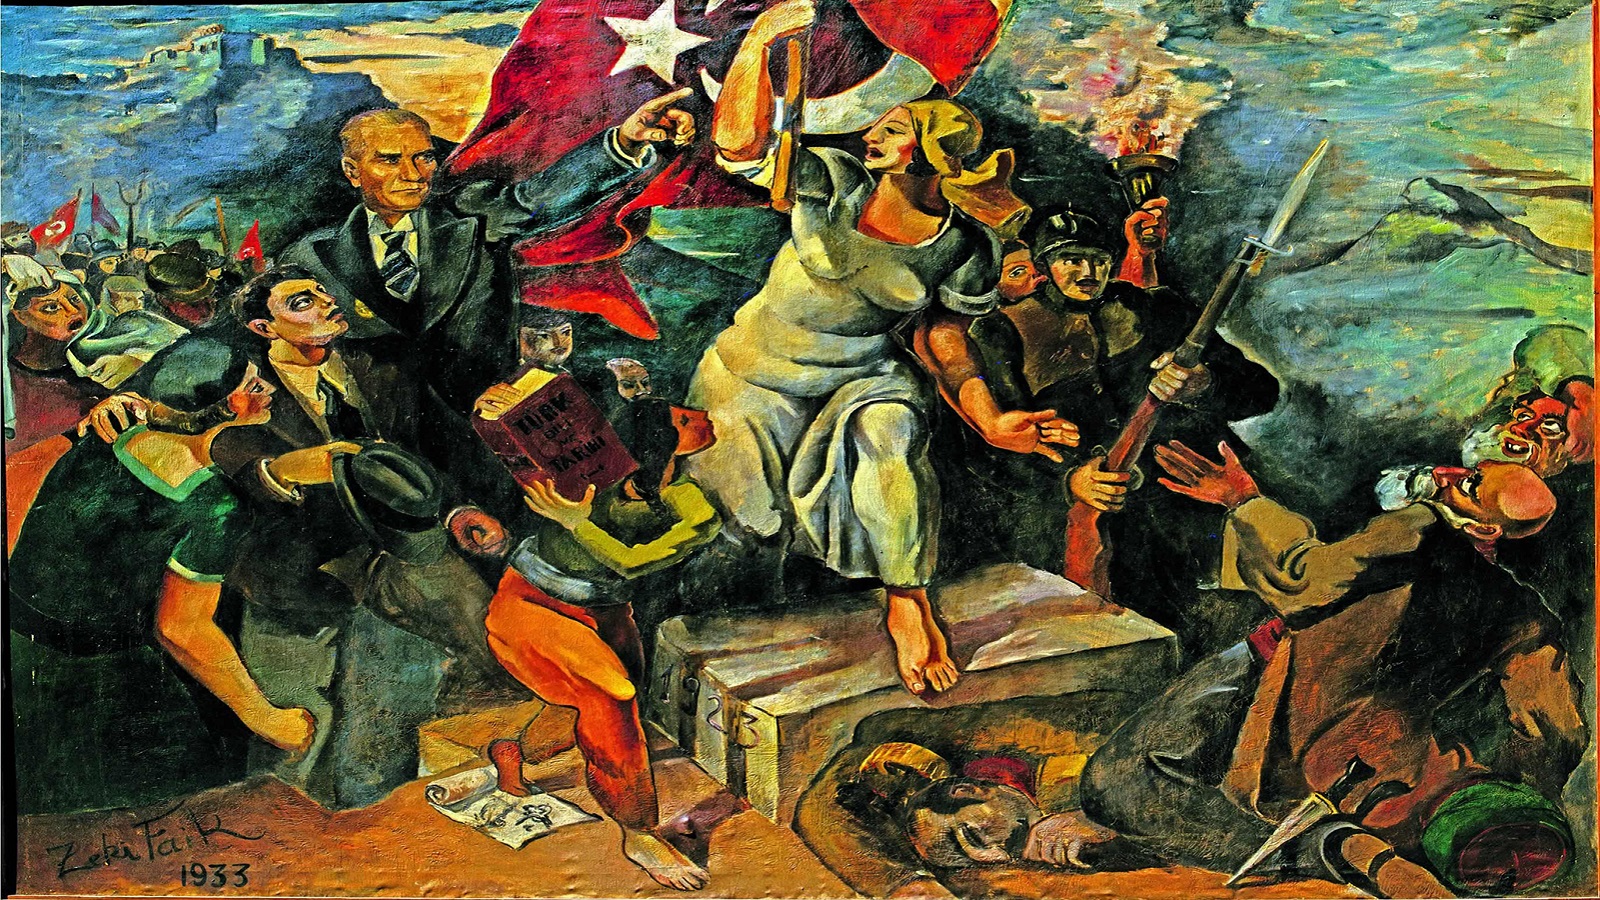 زكي فايق، "الانقلاب"، 1933.